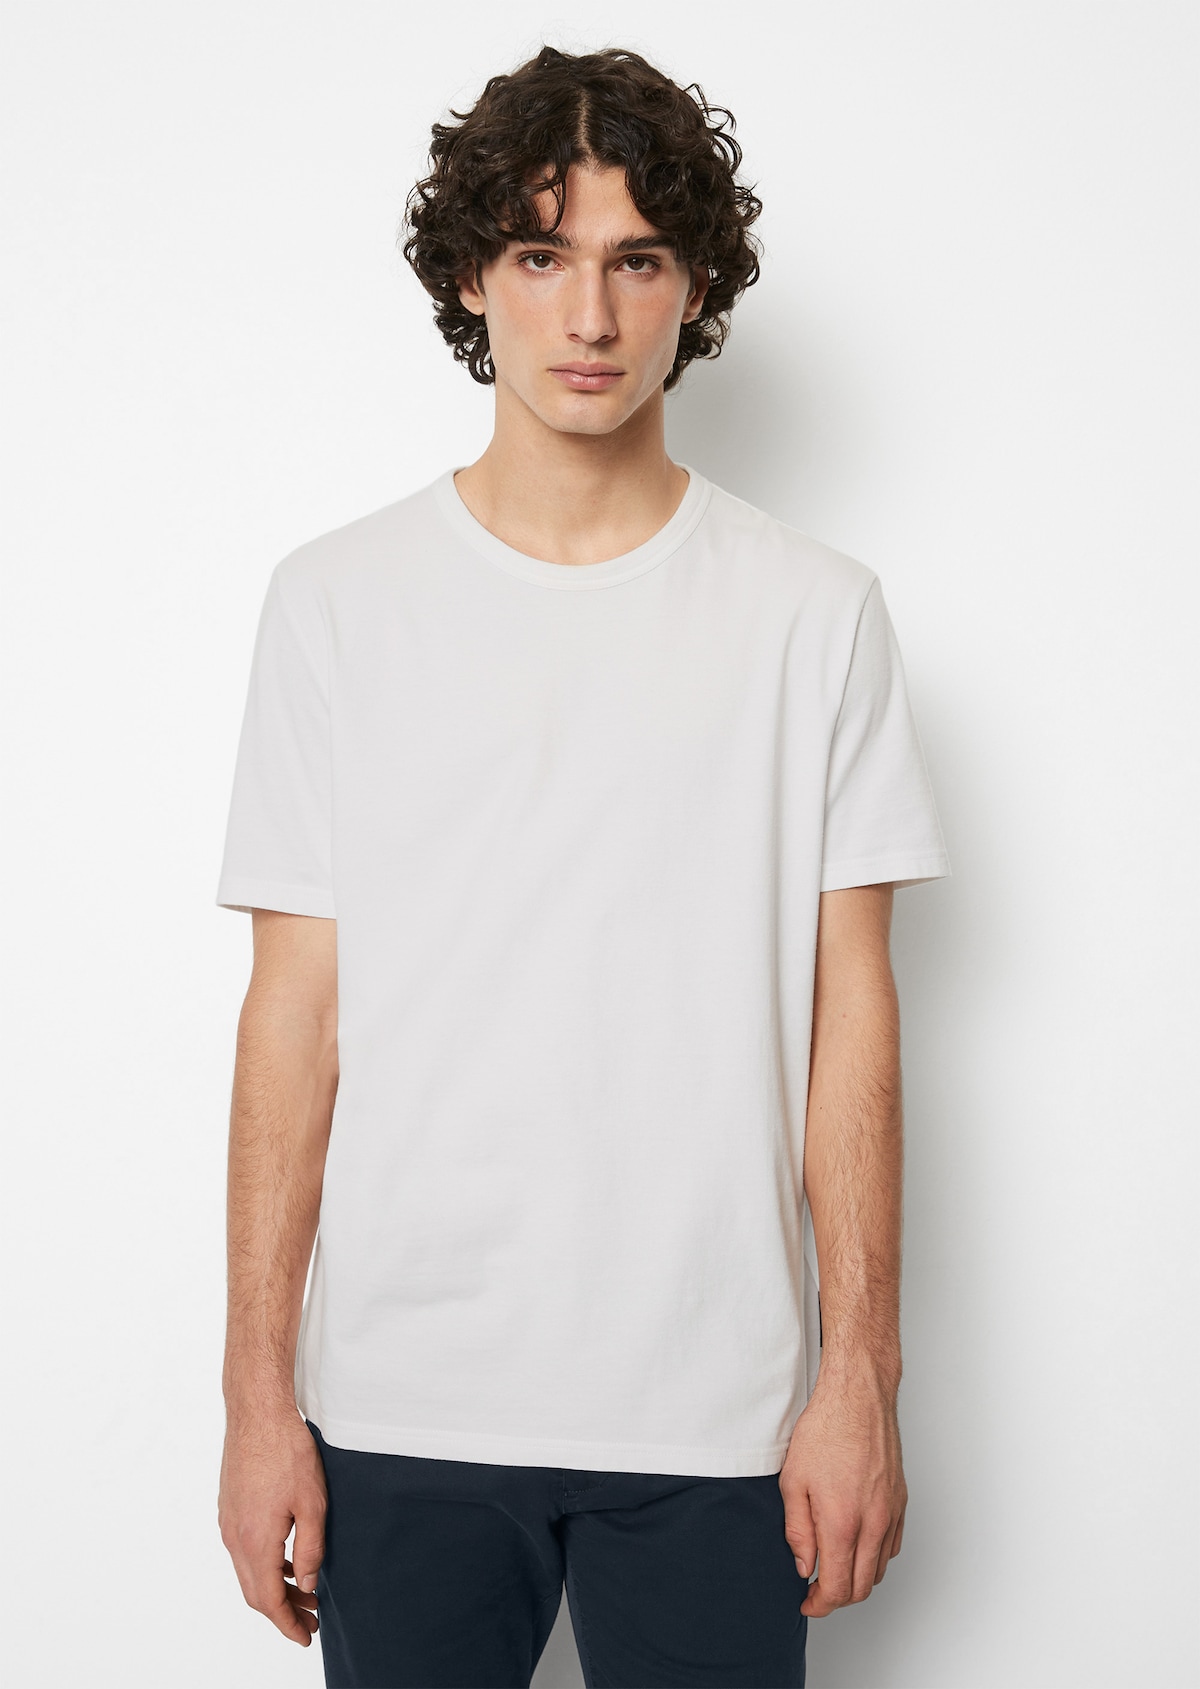 Rundhals-T-Shirt regular aus hochwertiger Baumwolle - weiß | Bekleidung |  MARC O'POLO